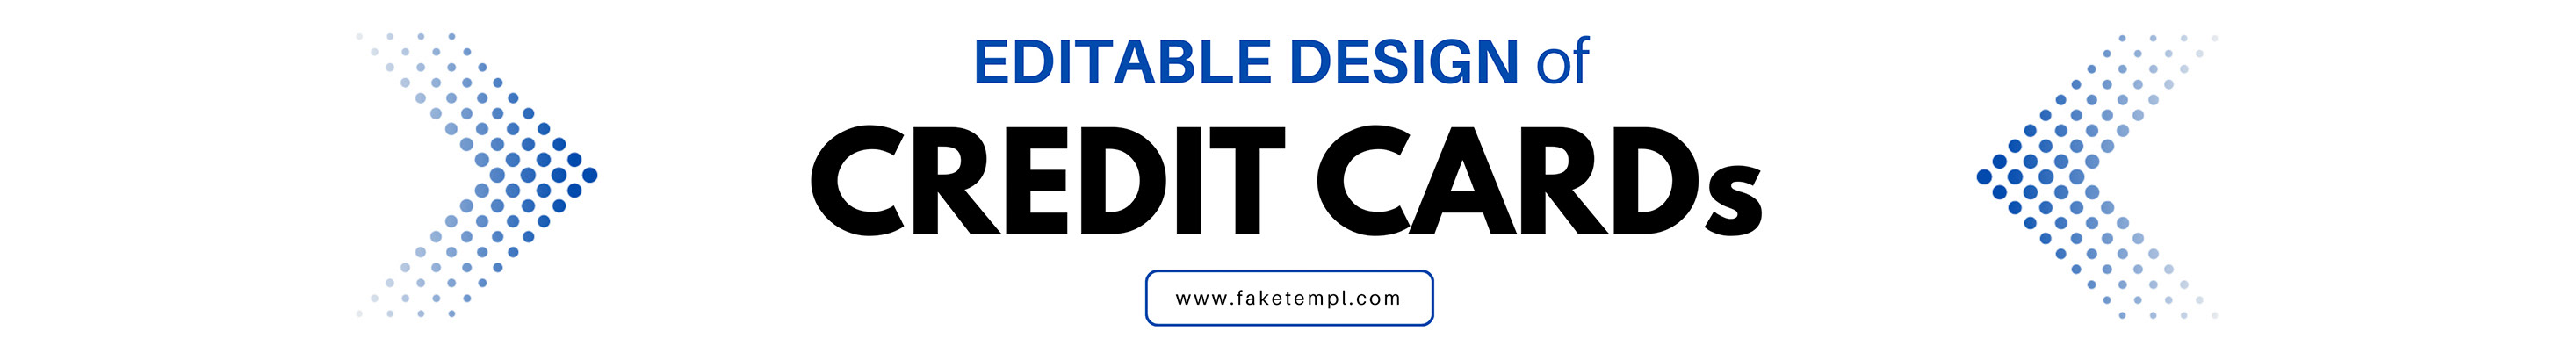 Profil-Banner von Faketempl Credit card